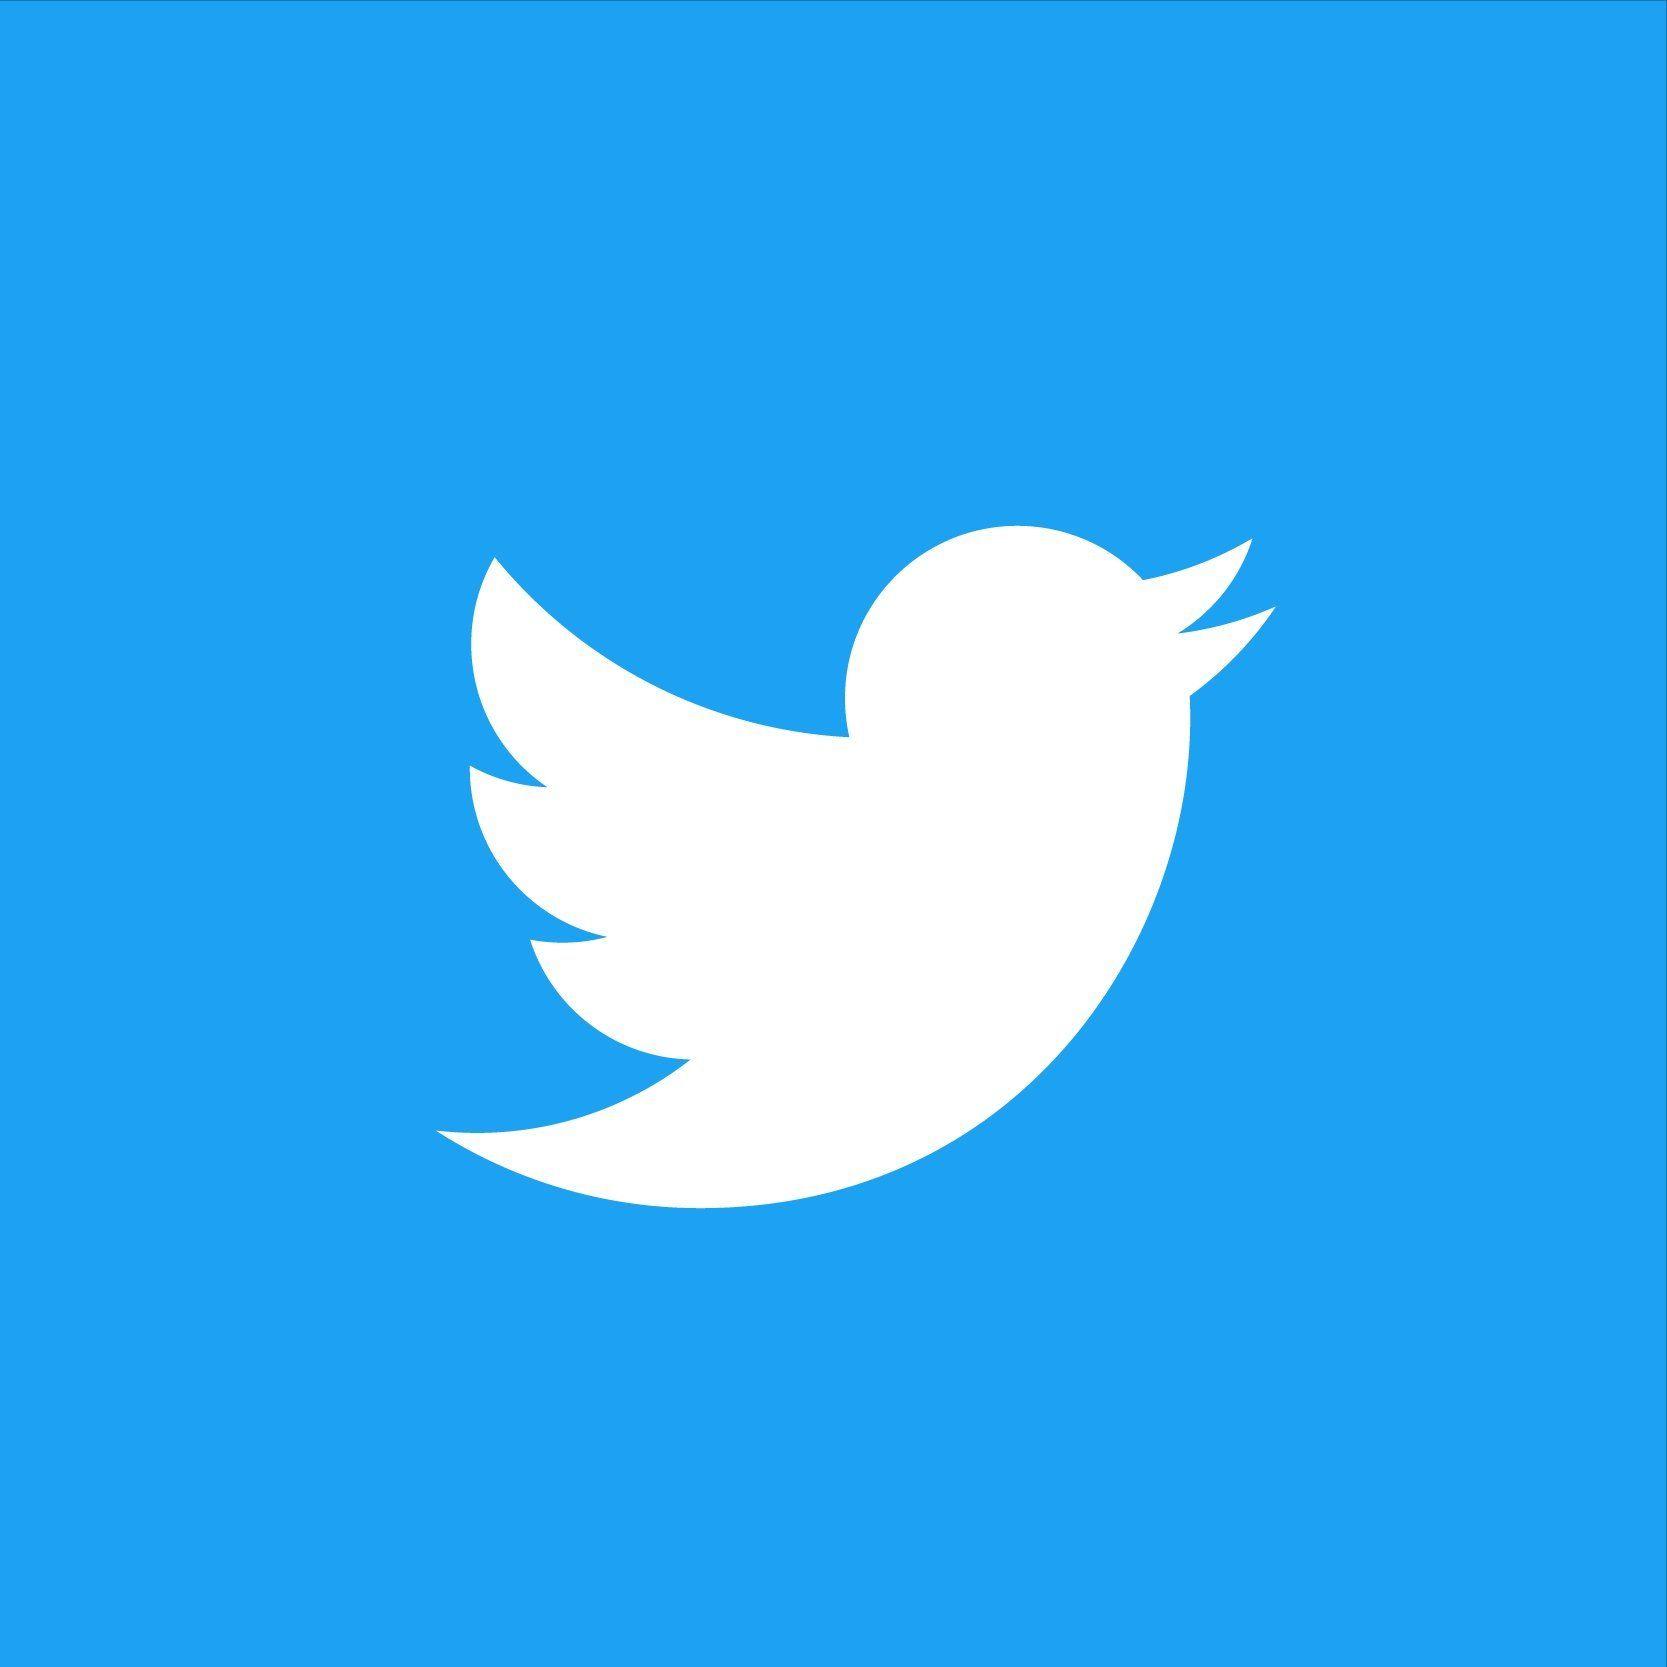 Twitter.com Logo - Twitter